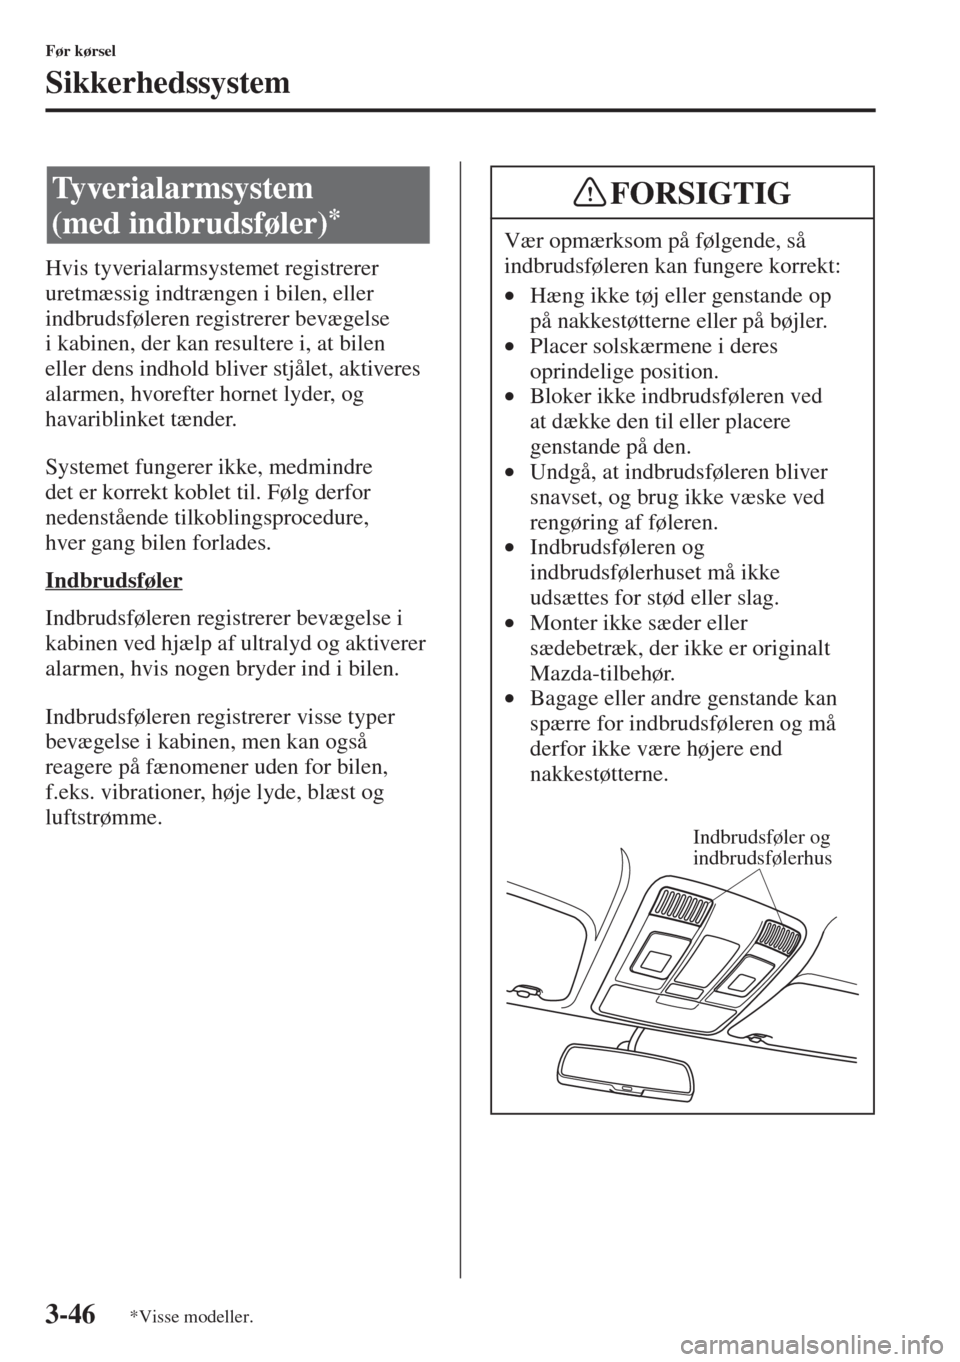 MAZDA MODEL 3 HATCHBACK 2015  Instruktionsbog (in Danish) 3-46
Før kørsel
Sikkerhedssystem
Hvis tyverialarmsystemet registrerer 
uretmæssig indtrængen i bilen, eller 
indbrudsføleren registrerer bevægelse 
i kabinen, der kan resultere i, at bilen 
elle